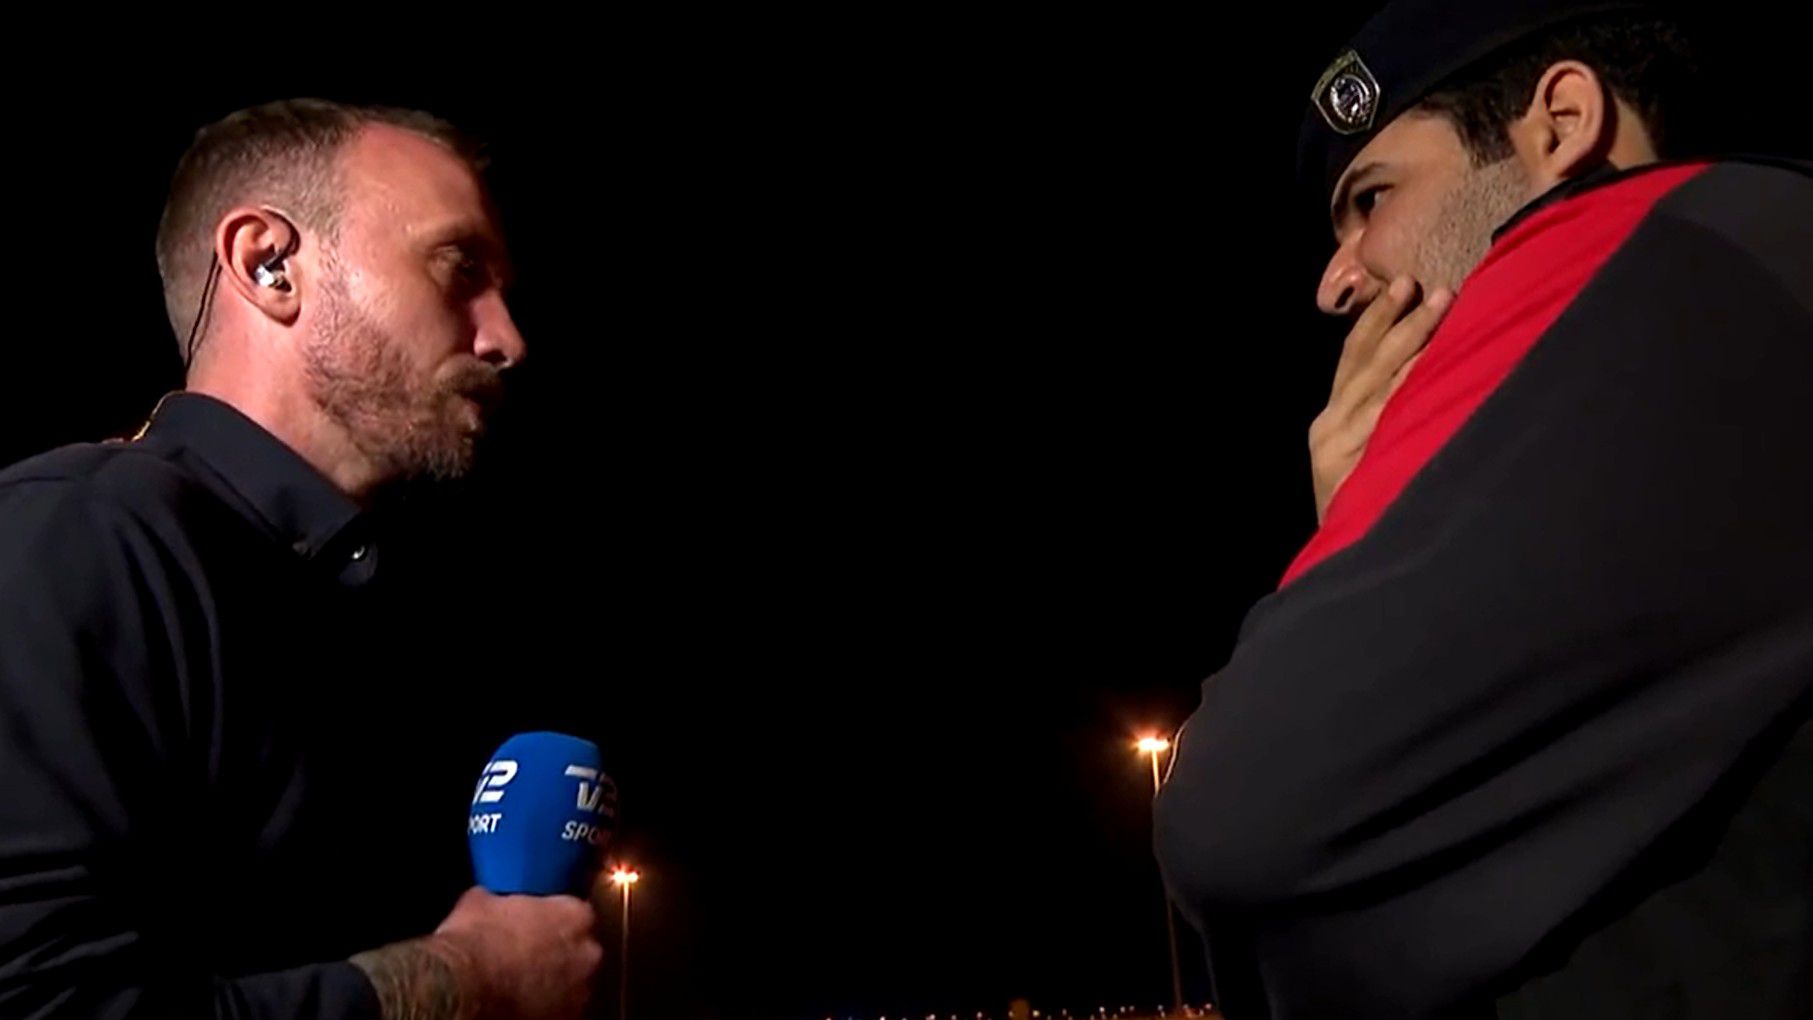 Újabb dán riporter került összetűzésbe a rendőrökkel Katarban – videó